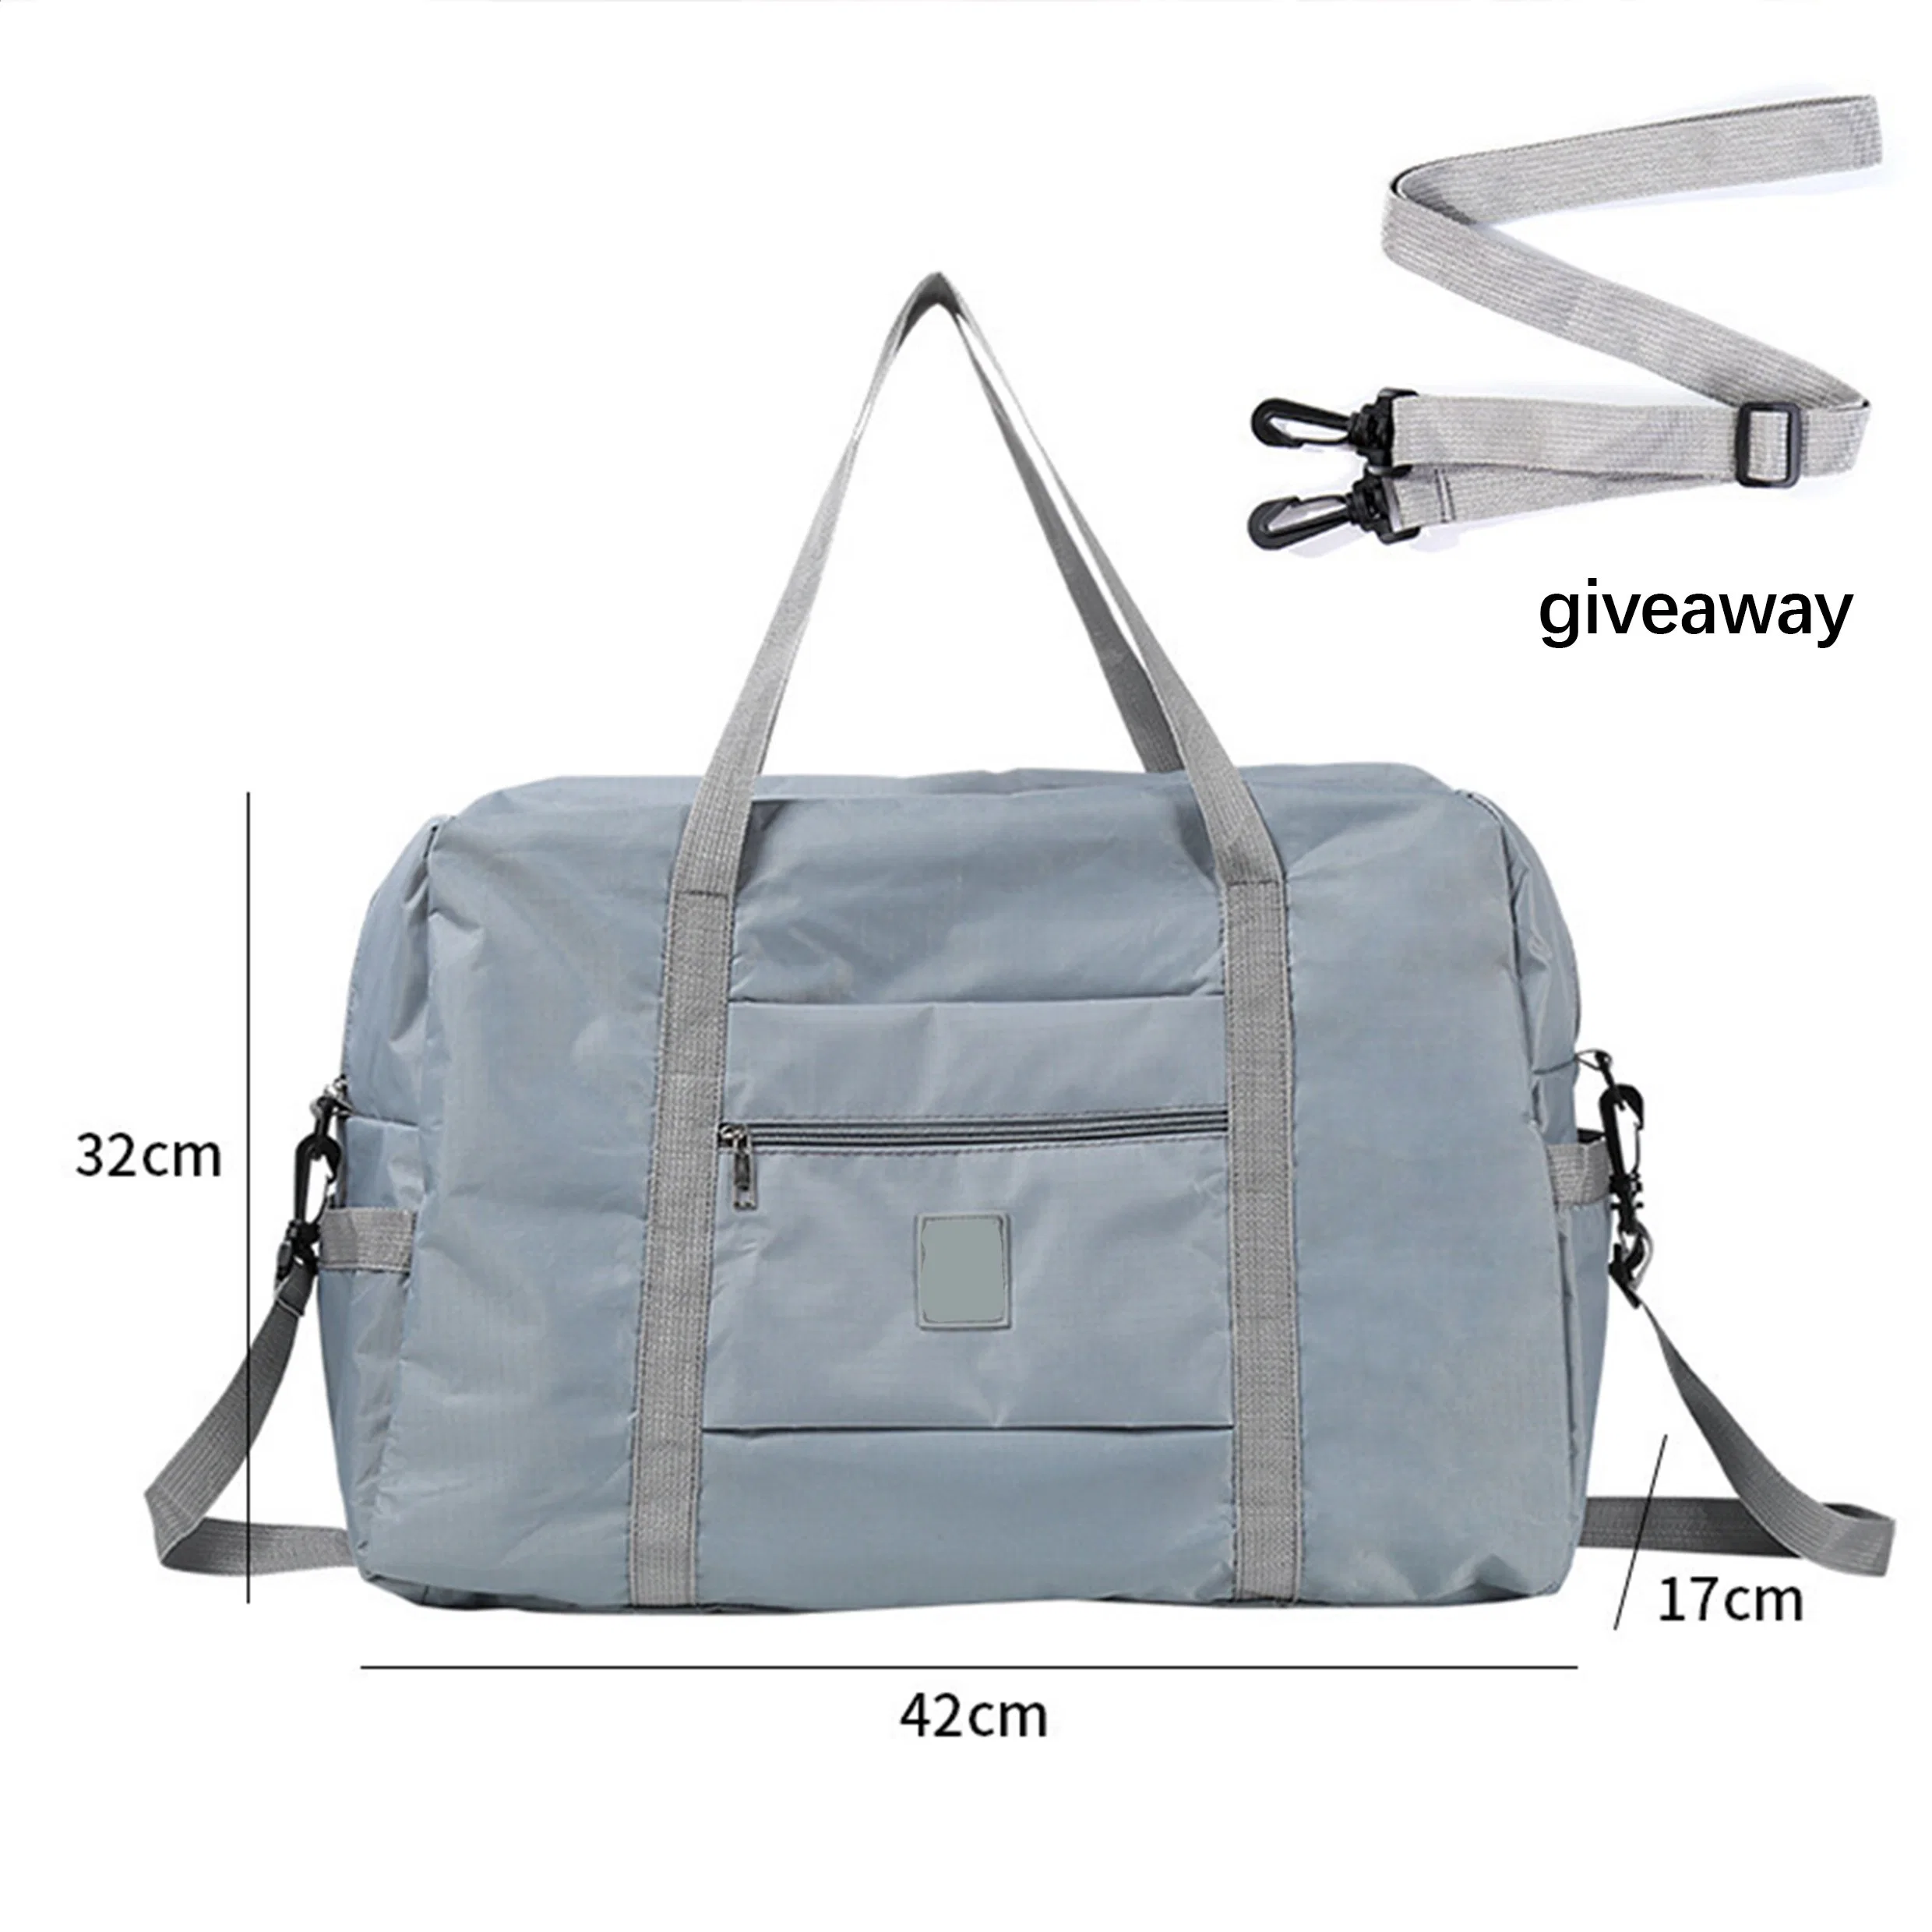 New Folding Travel Duffels Unisex Large Capacity Clothing Organizer Outdoor Luggage Bag Duffle Handbag Suitcase